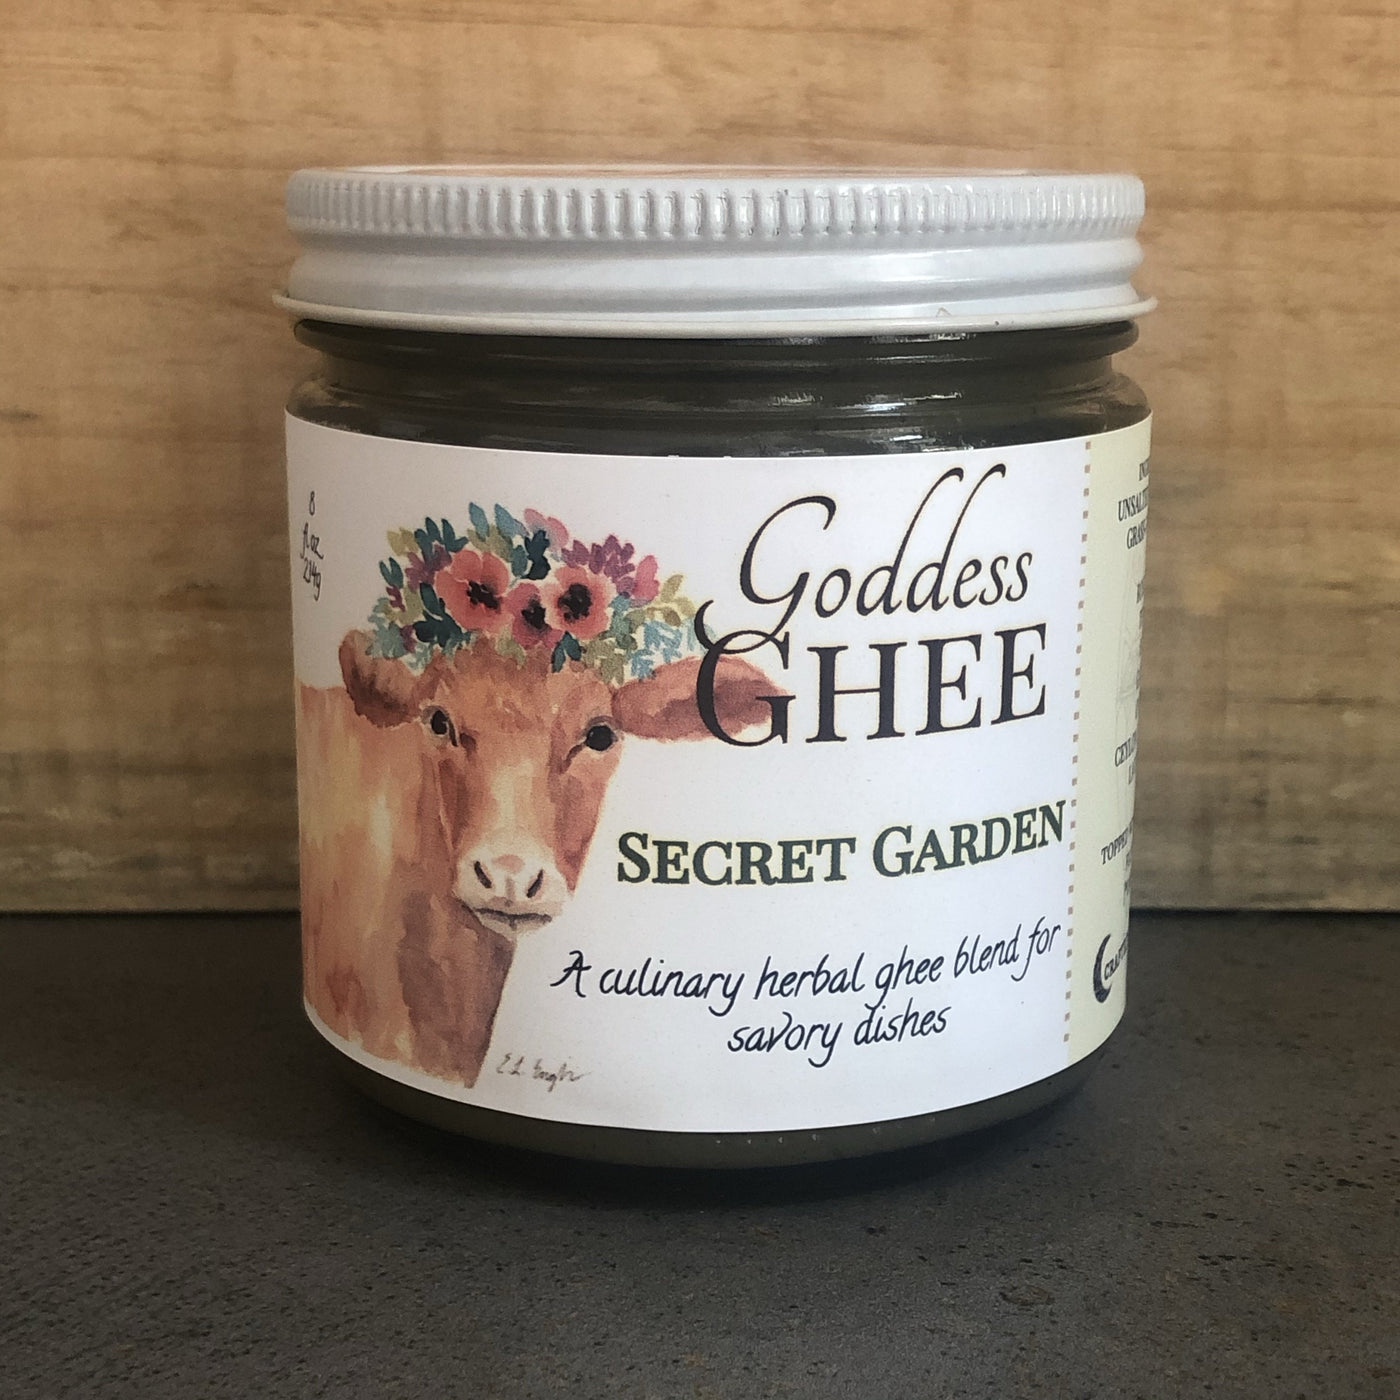 Local "Secret Garden" Ghee by Goddess Ghee, 9 Ounces